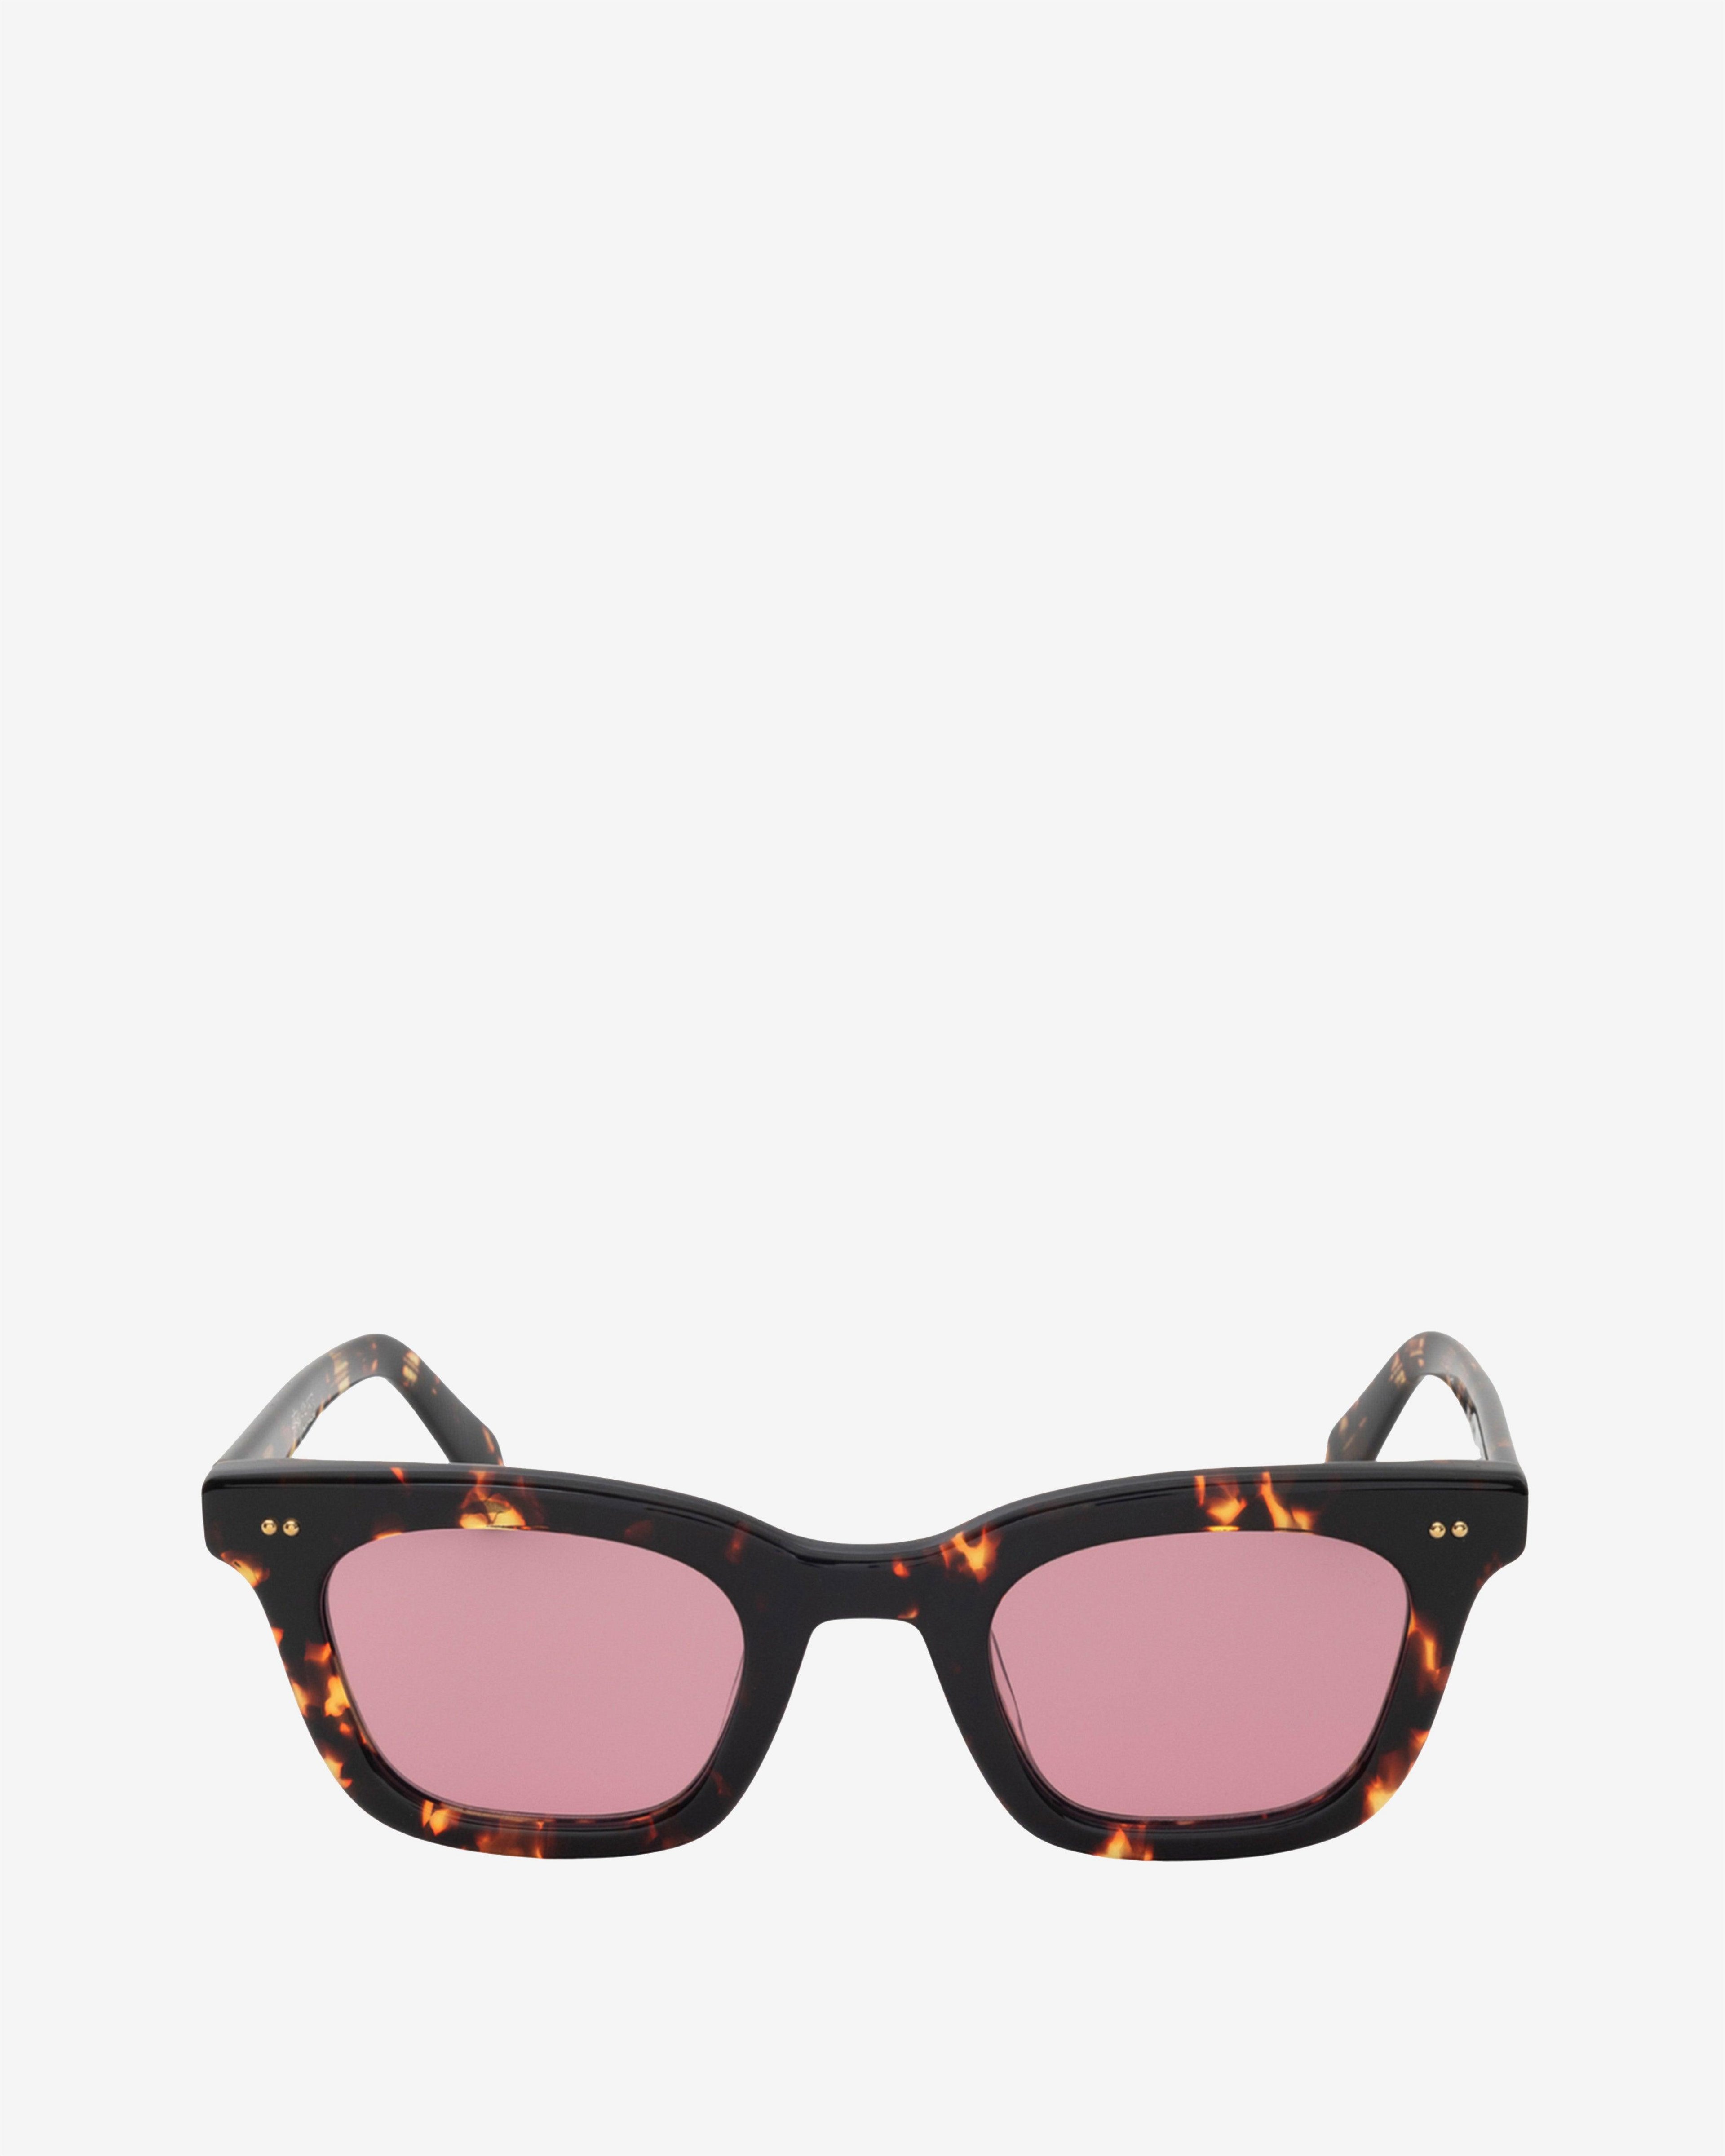 Stüssy - Ace Sunglasses - (Tortoise/Pink) by STUSSY